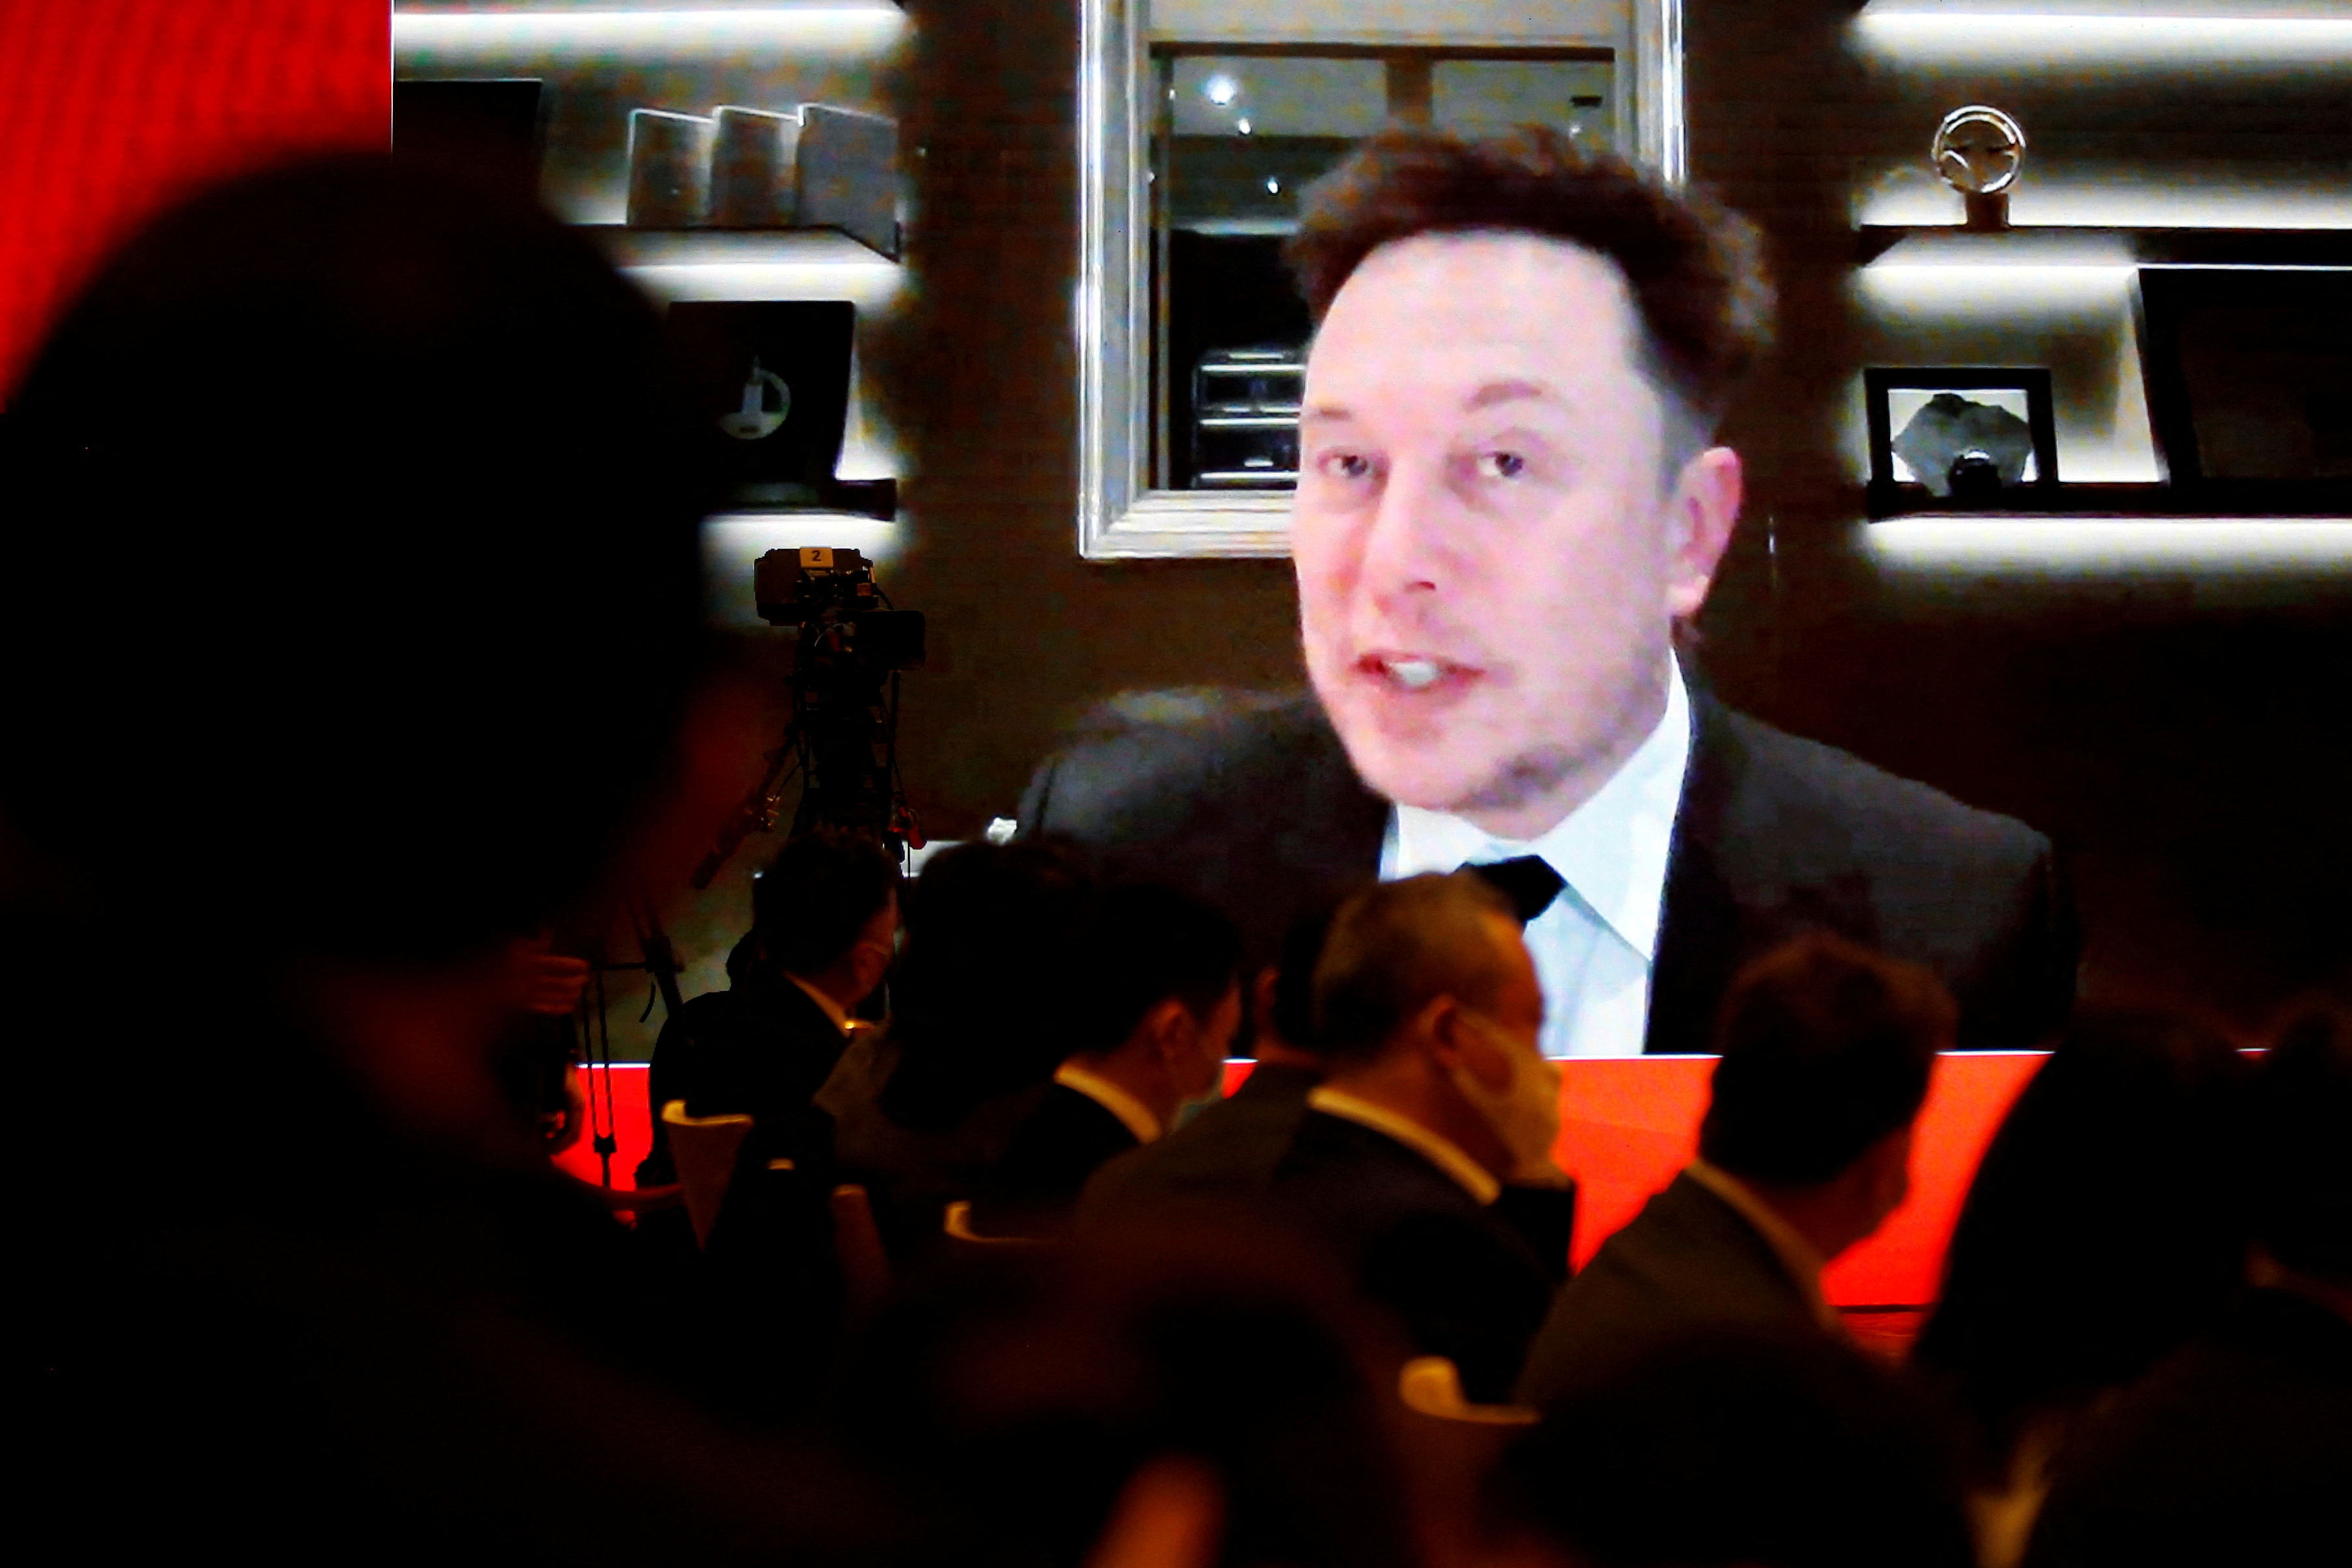 FOTO DE ARCHIVO: El director ejecutivo de Tesla Inc, Elon Musk, asiste a través de un enlace de video a una sesión en el Foro de Desarrollo de China celebrado en Beijing, China, el 20 de marzo de 2021. REUTERS/Roxanne Liu/ File Photo